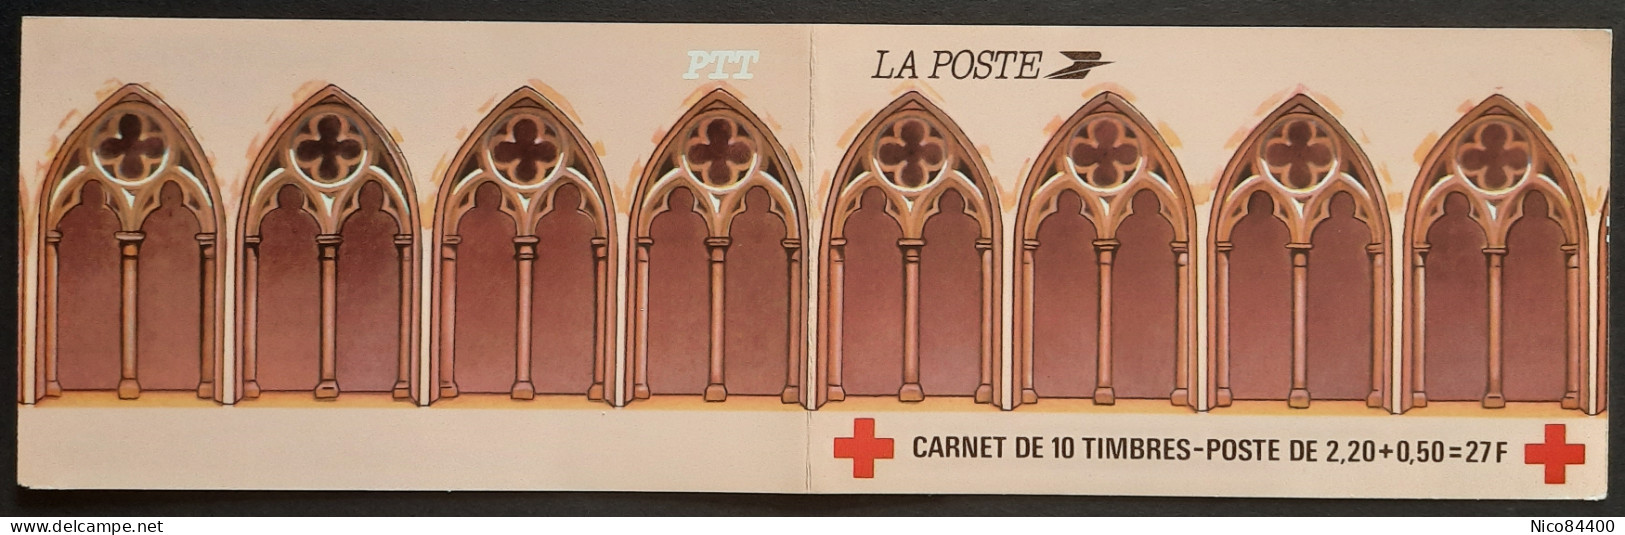 France - Carnet Croix-Rouge - 1985 - Y&T 2034 - Retable D'Issenheim - Neuf ** - Rotes Kreuz